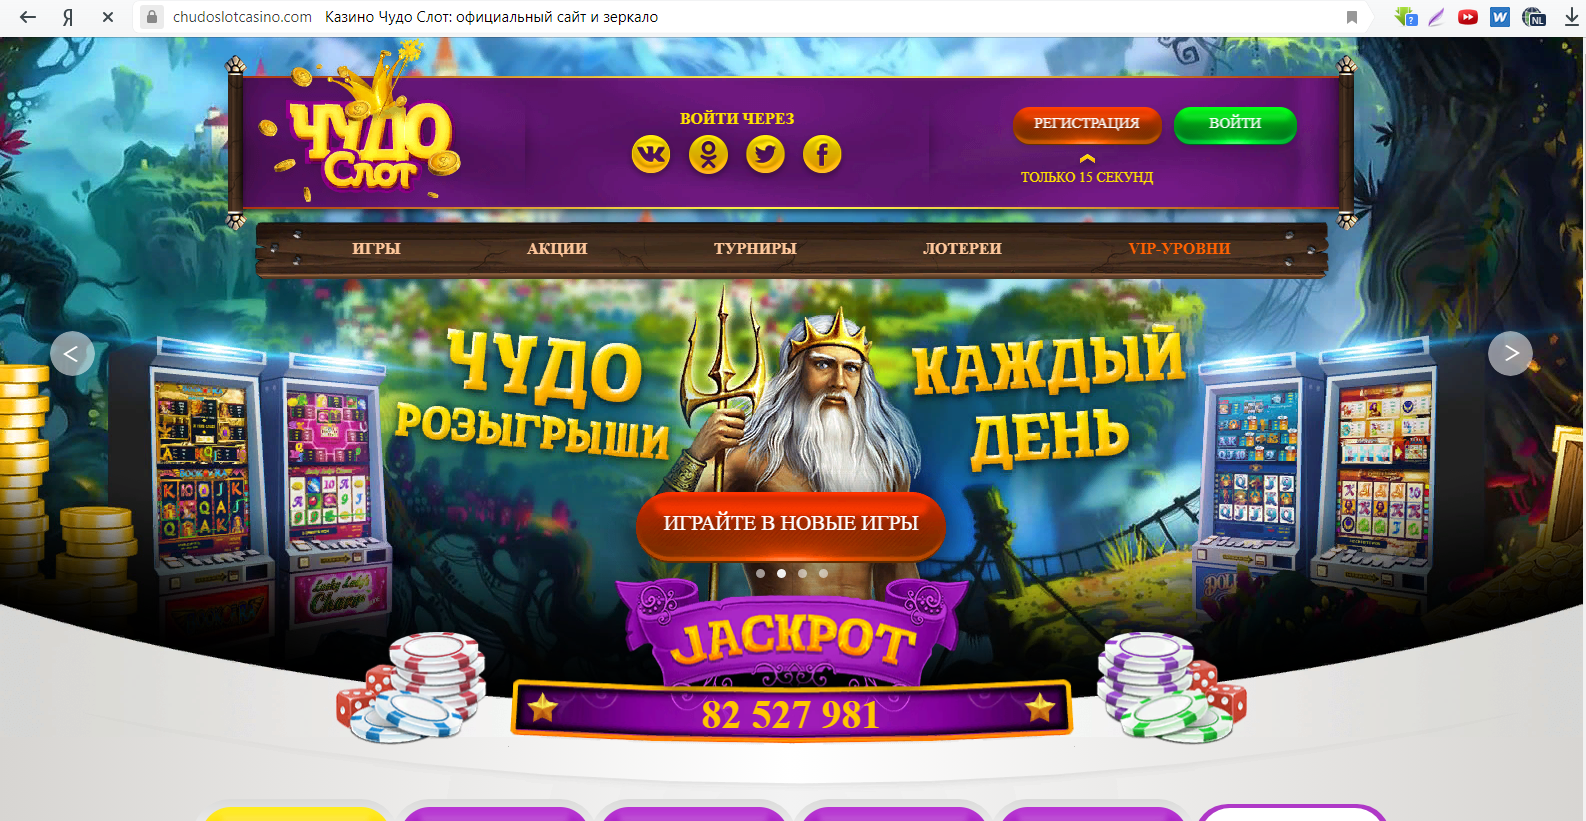 Слот в казино онлайн регистрация гадать на выигрыш в лотерею джекпот сегодня